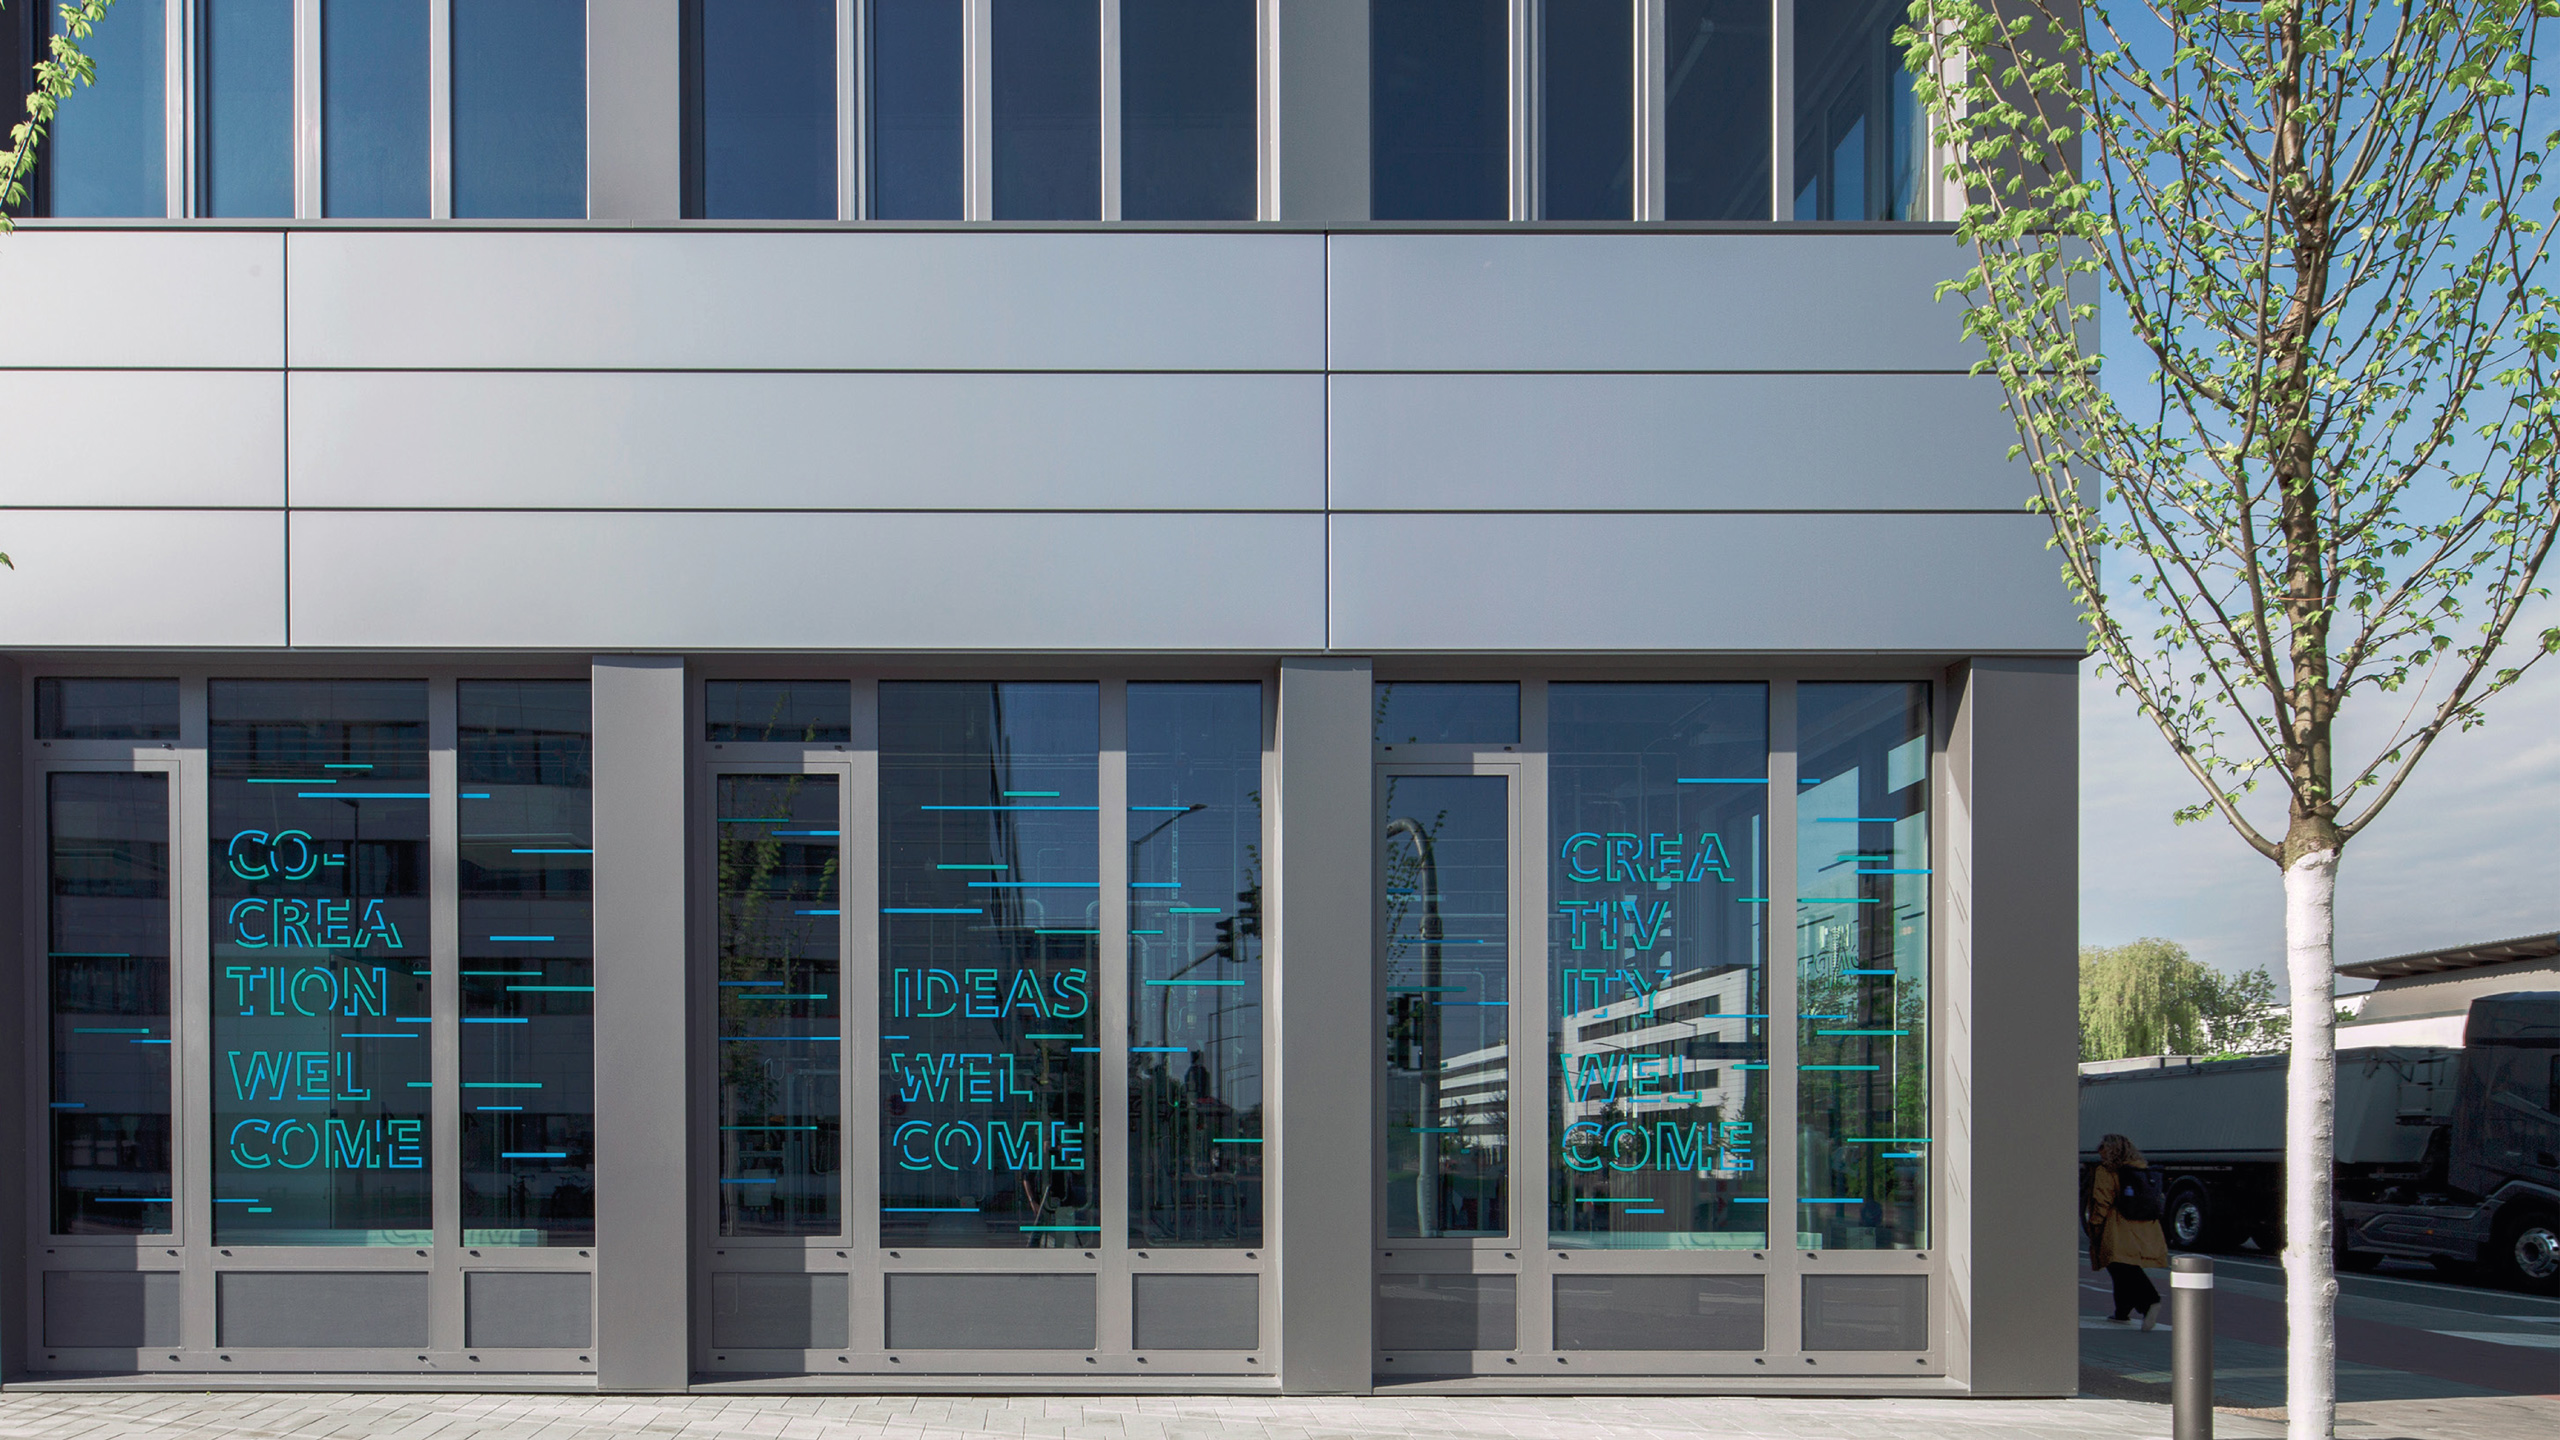 Siemens Technologie Center, Außenfassade, typografische Gestaltungselemente auf den Fensterscheiben in grün und blau